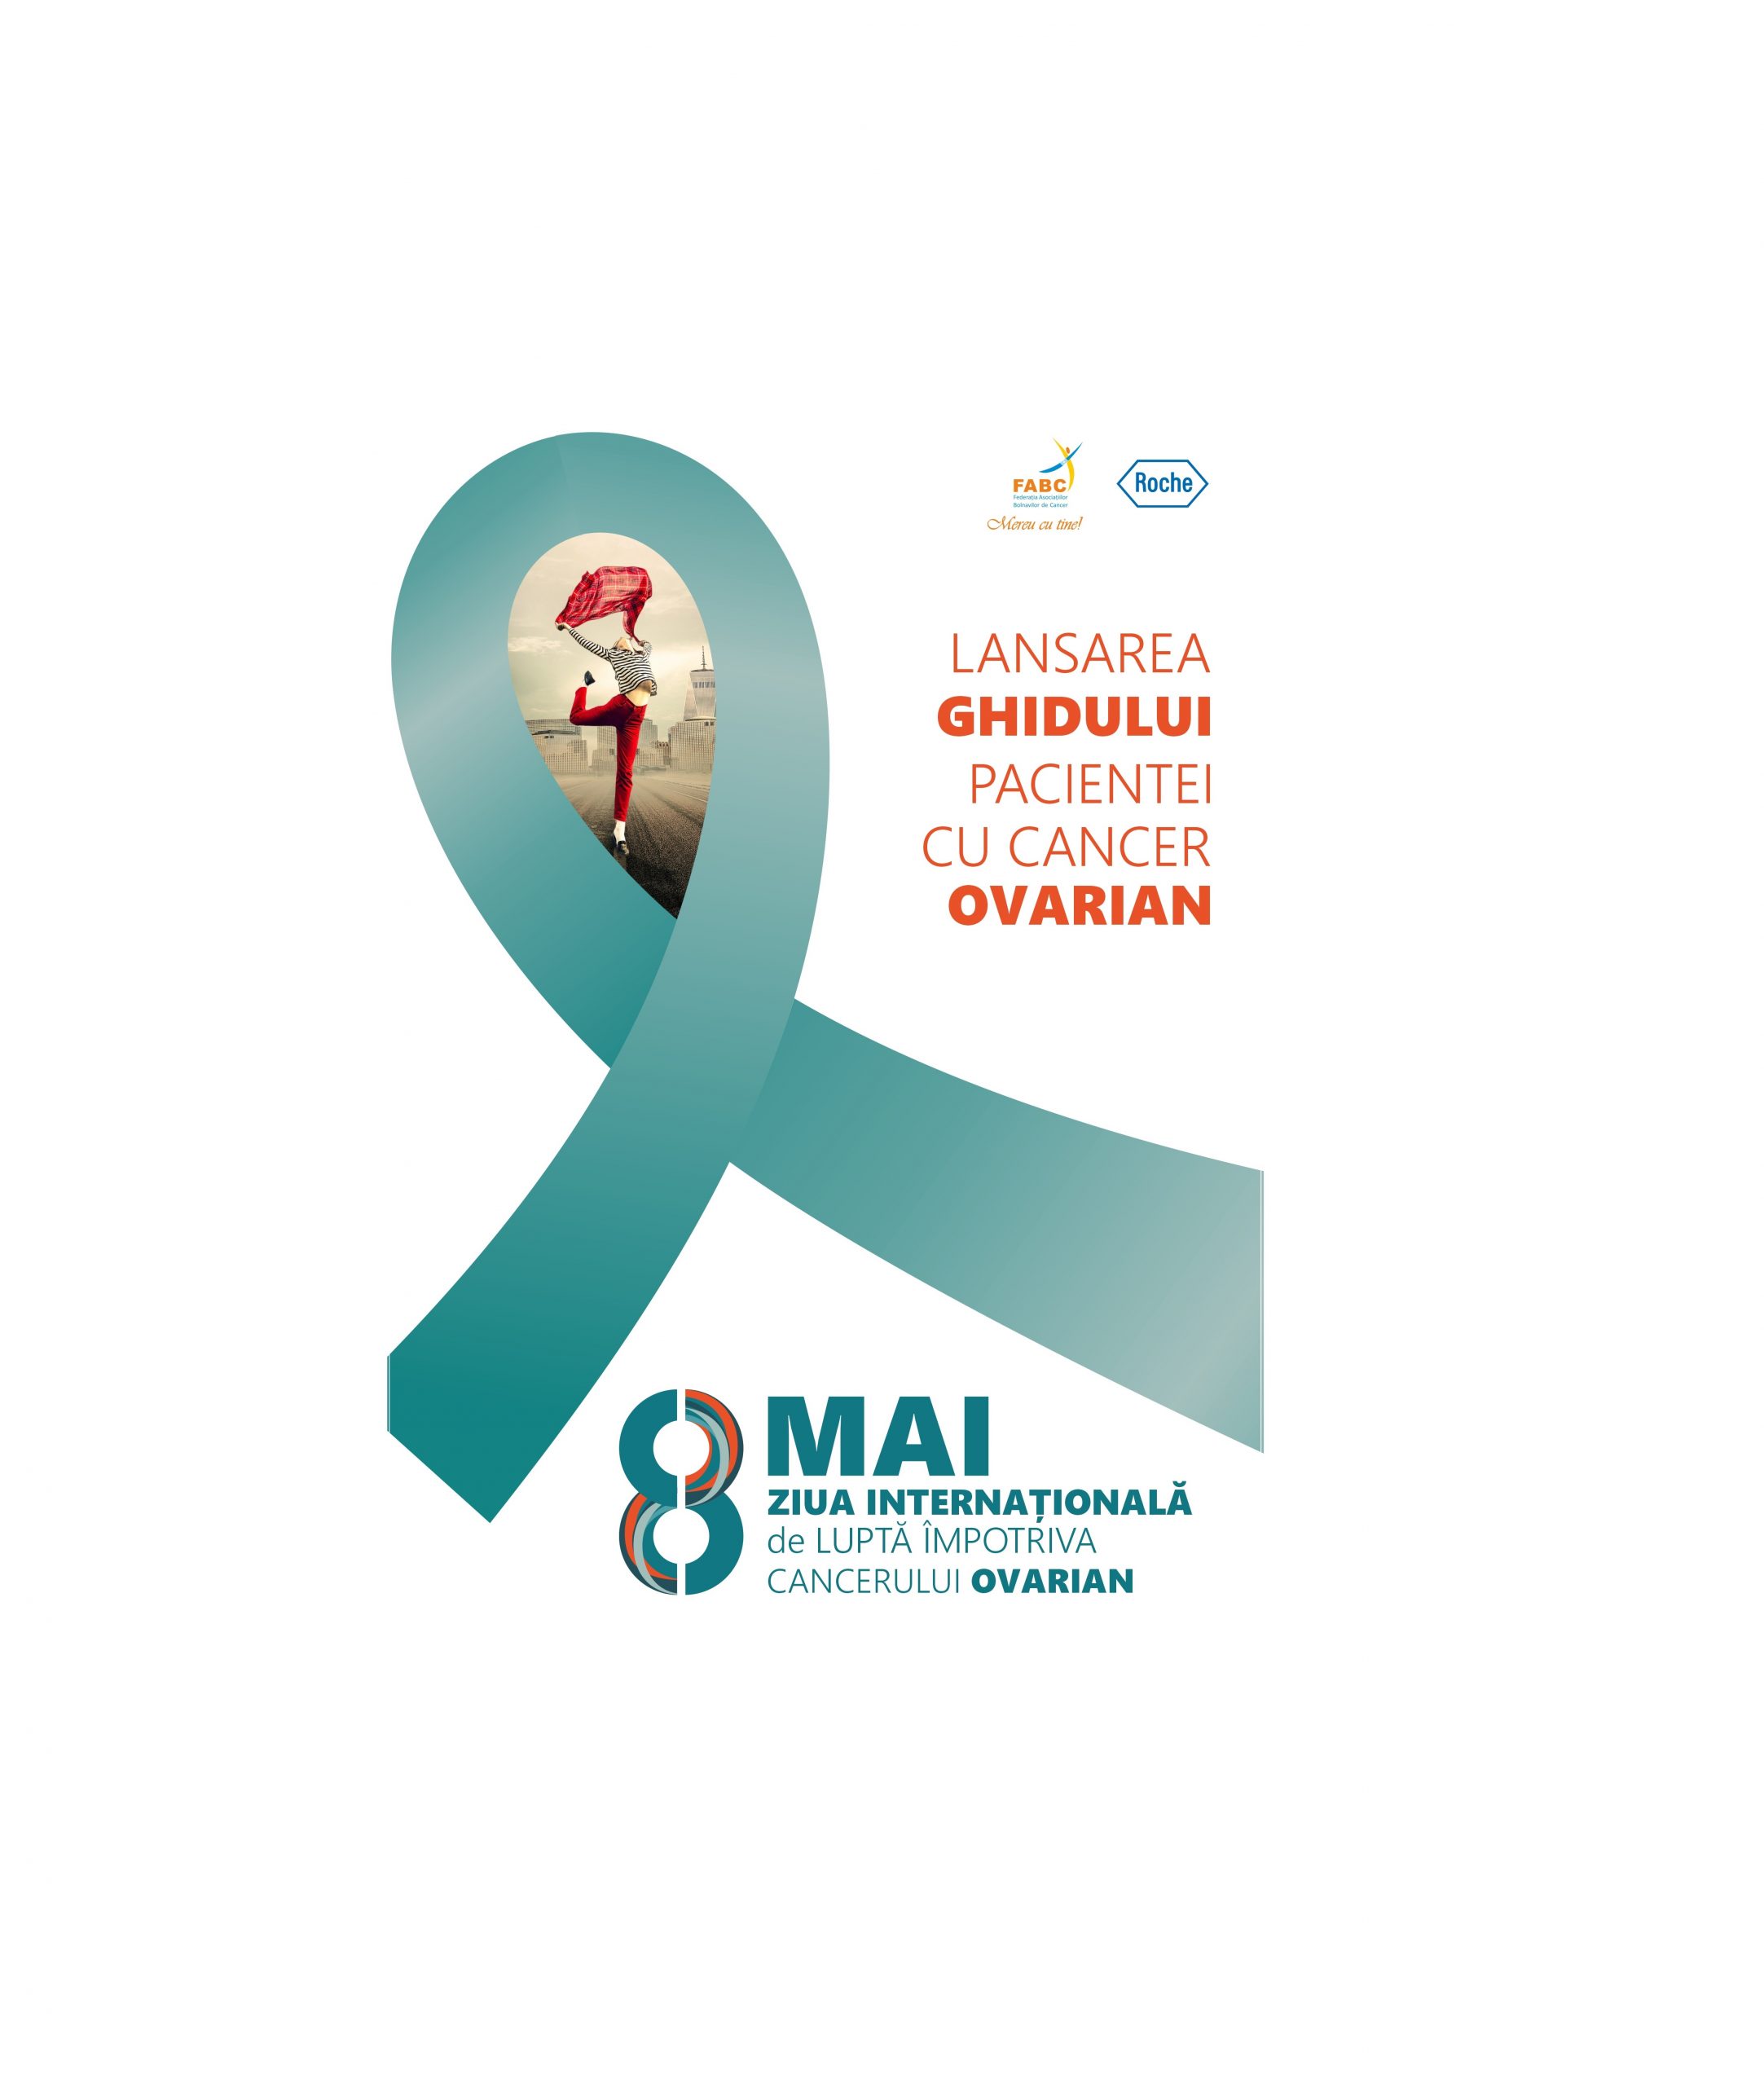 Federaţia Asociaţiilor Bolnavilor de Cancer, în parteneriat cu Roche România, lansează un ghid esențial pentru pacientele cu cancer ovarian